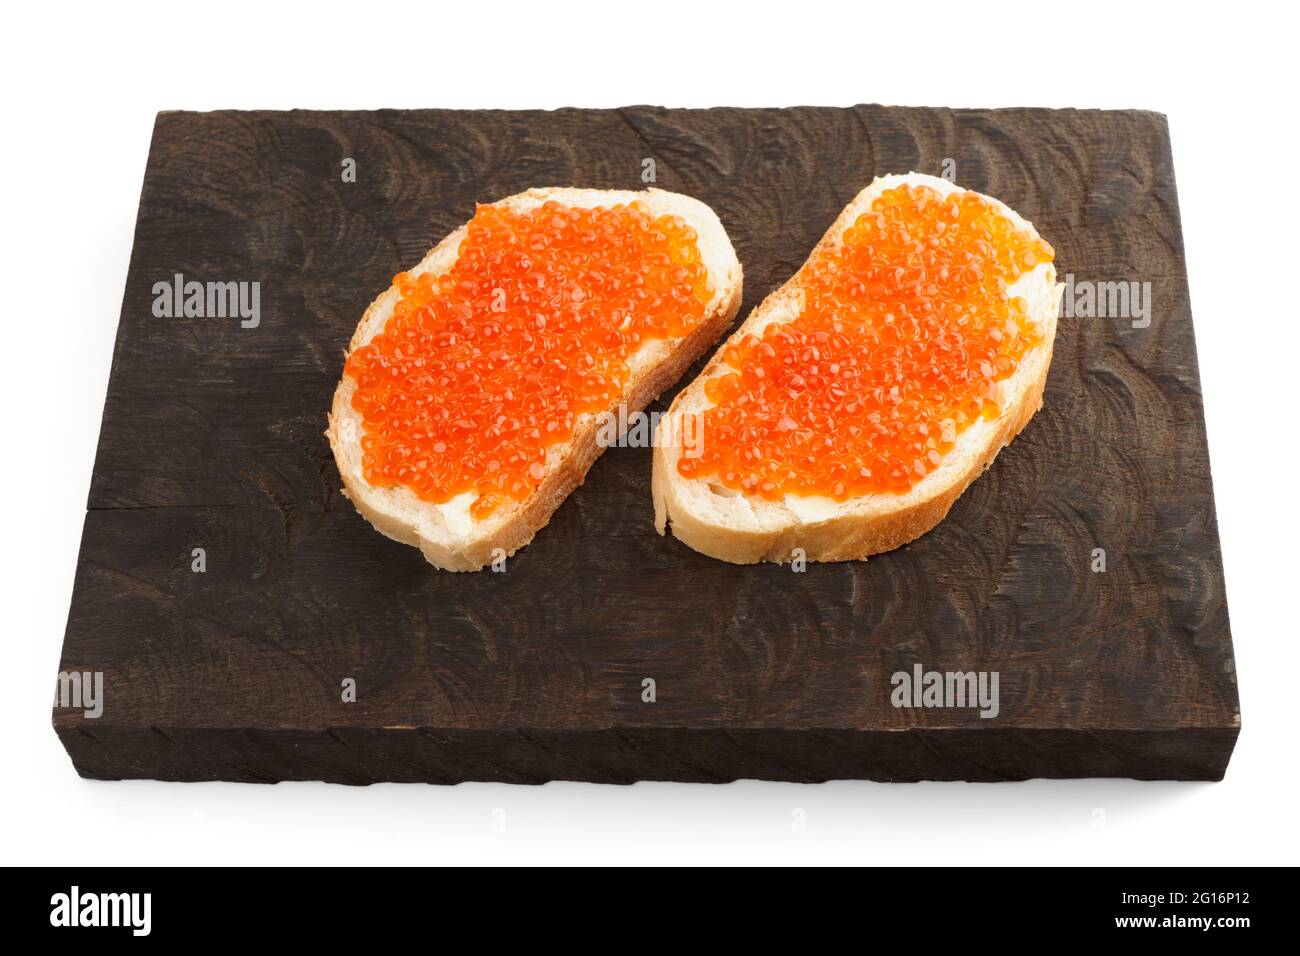 Offene Sandwiches mit Lachsrogen auf einem hölzernen Servierbrett, isoliert auf Weiß Stockfoto